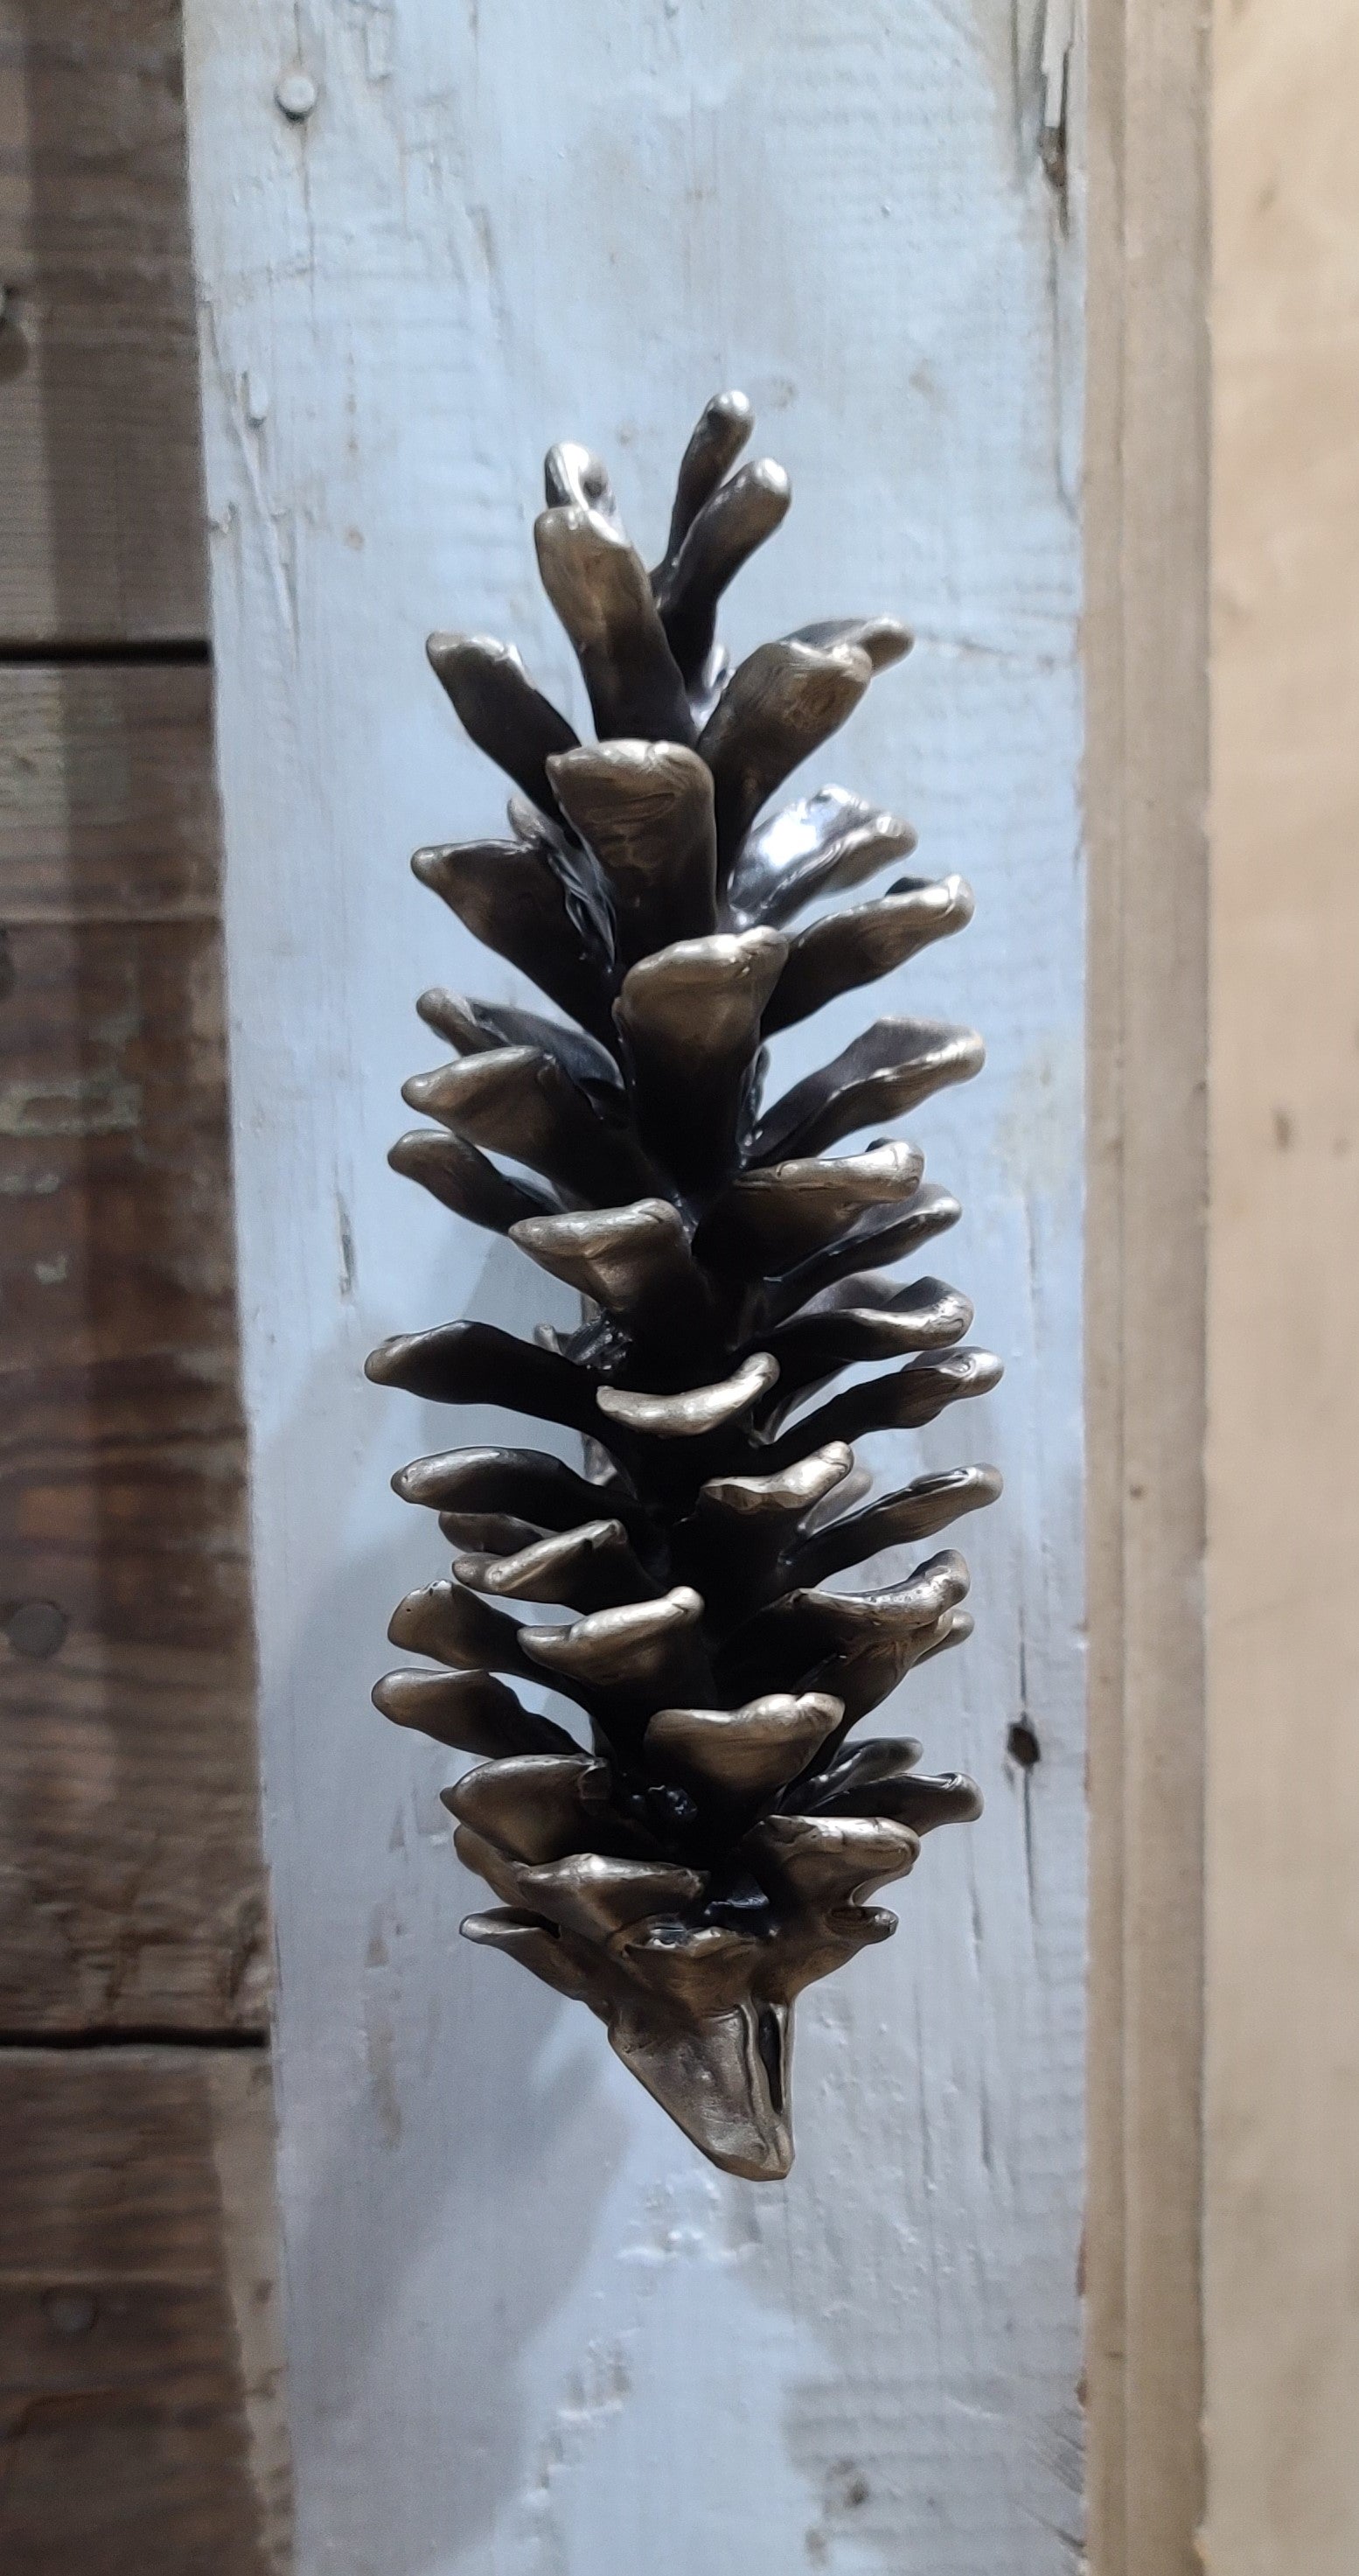 Bronze door knocker, white pine cone